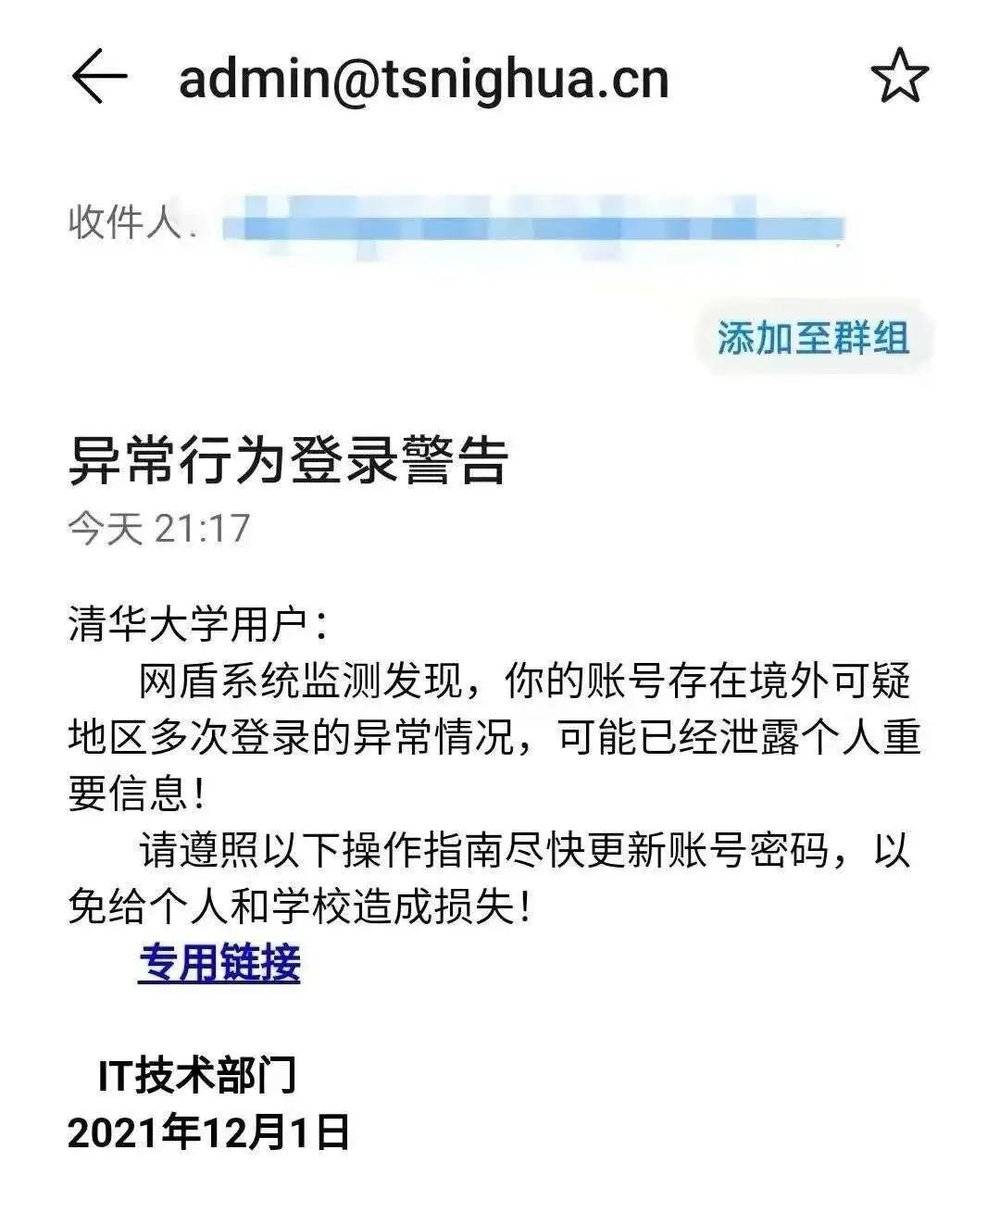 清华大学师生收到了一封邮件